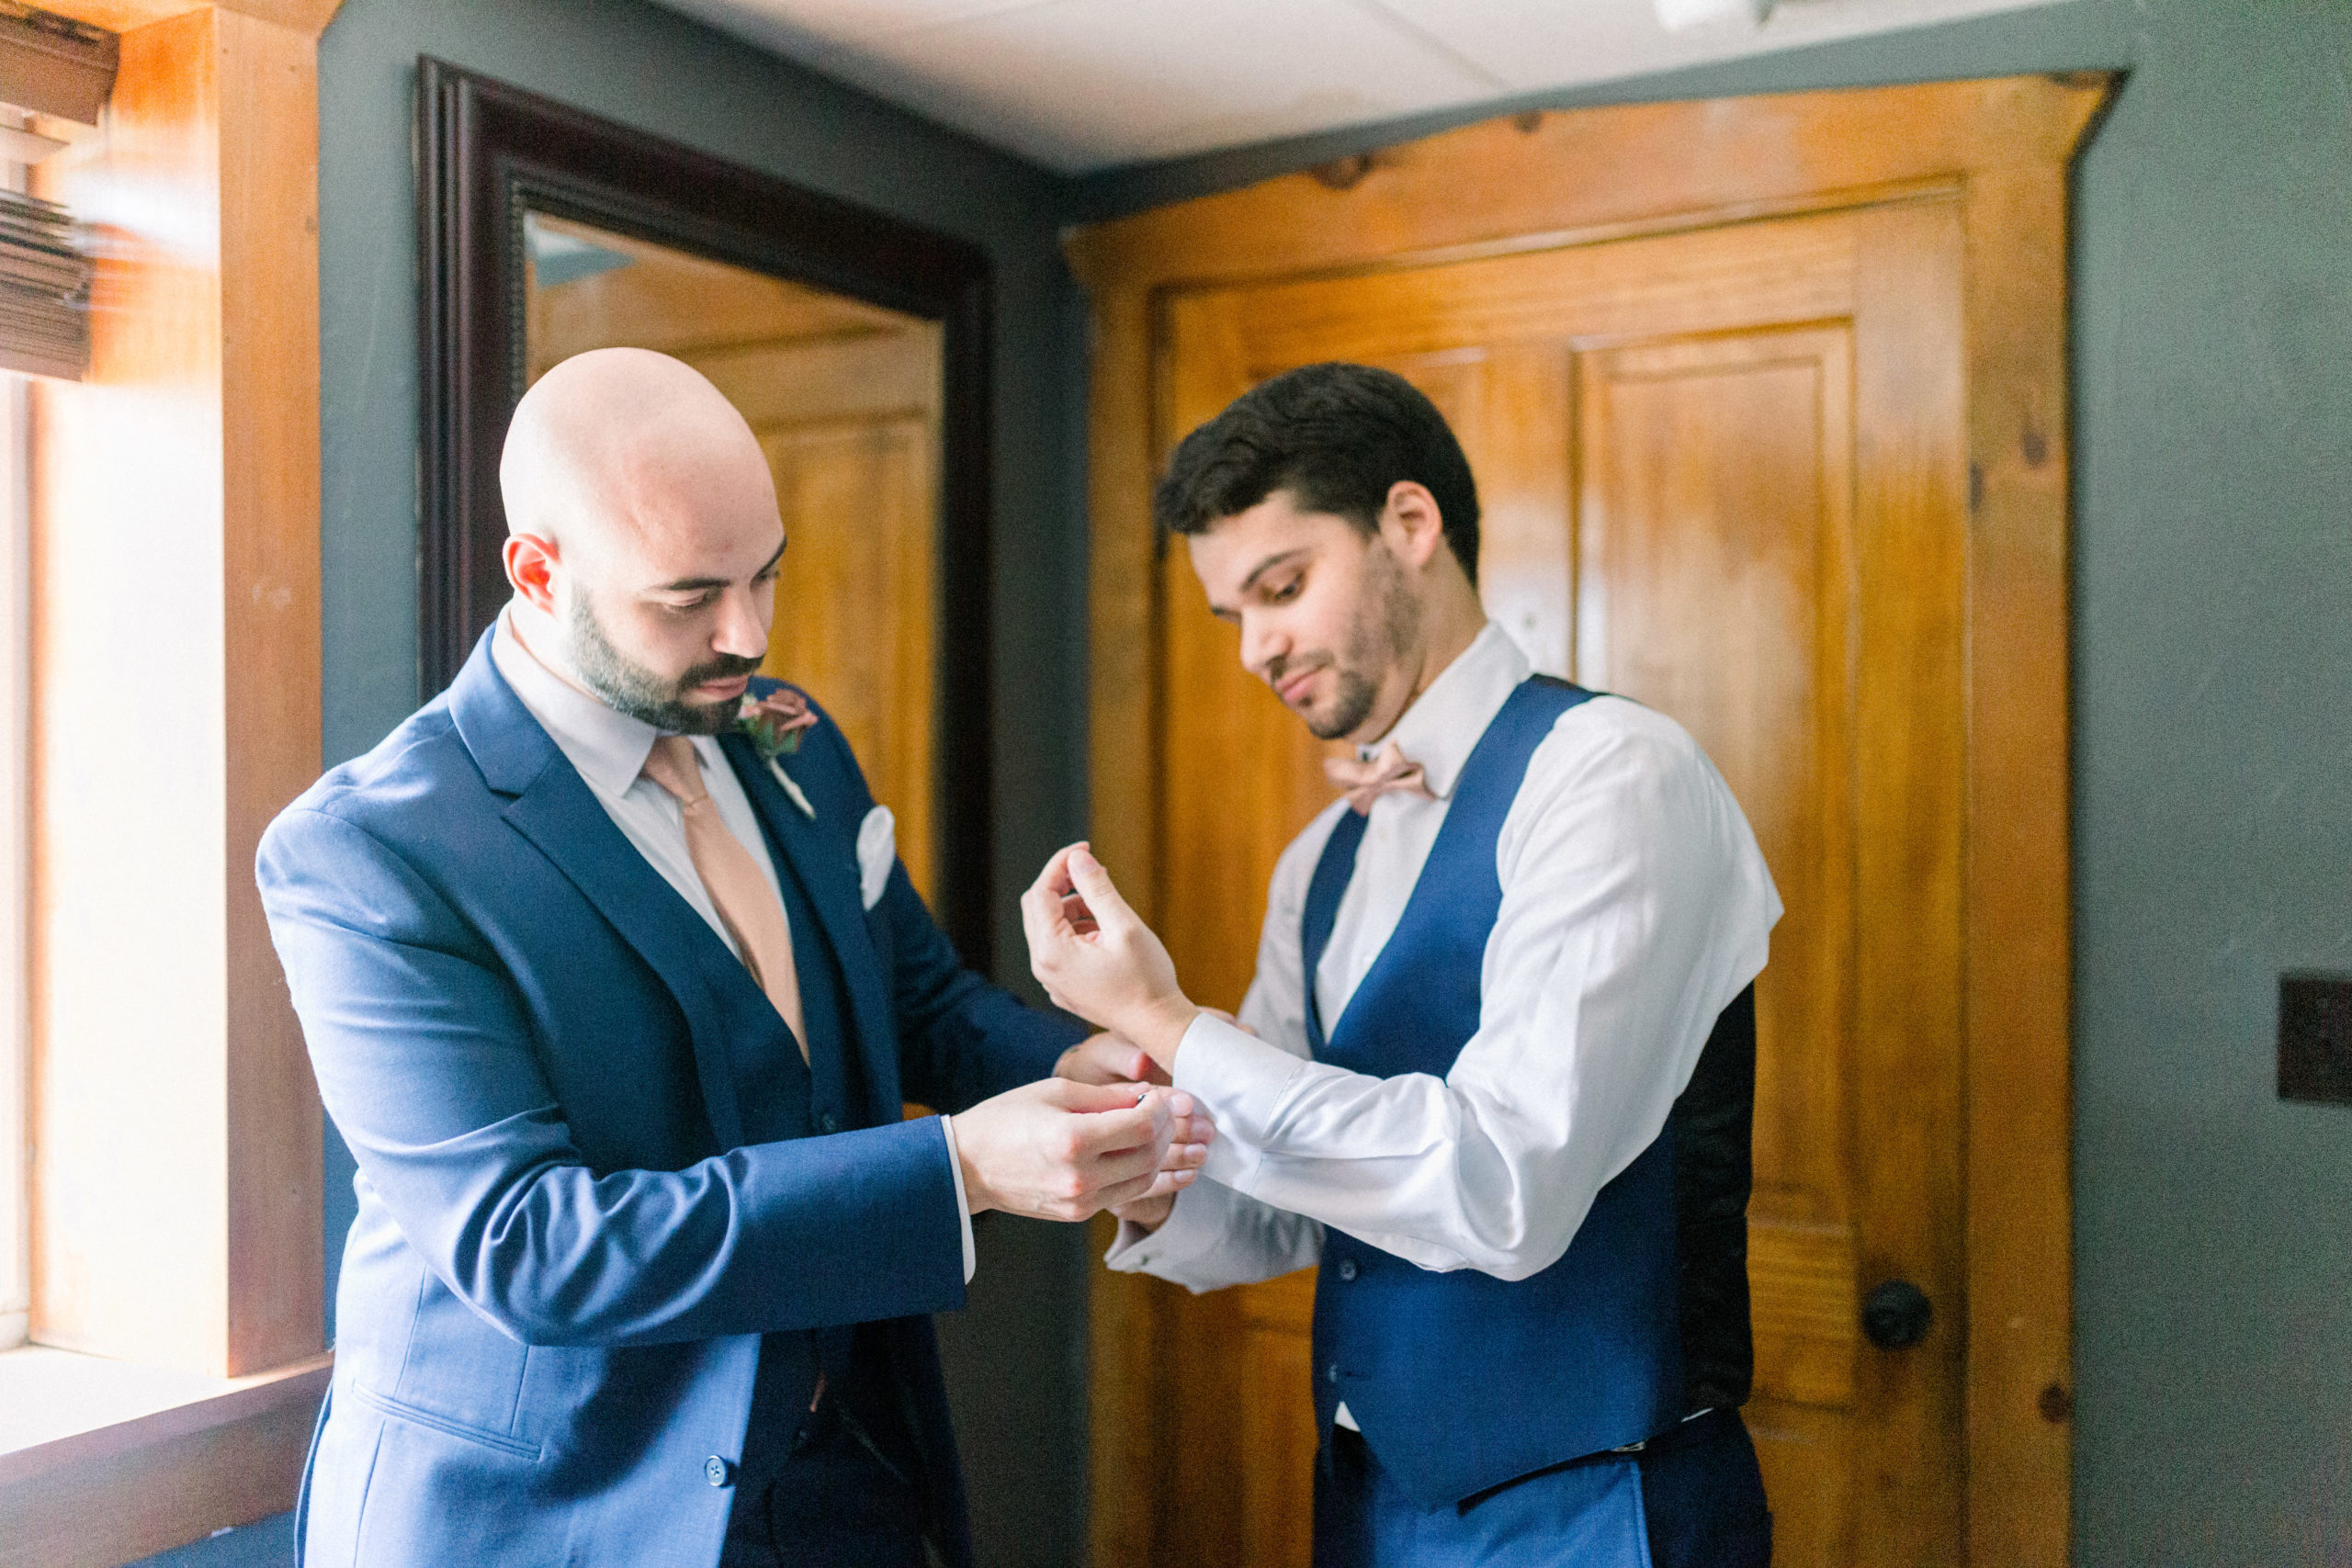 groomsmen wearing navy suit helping groom with sleeves on shirt